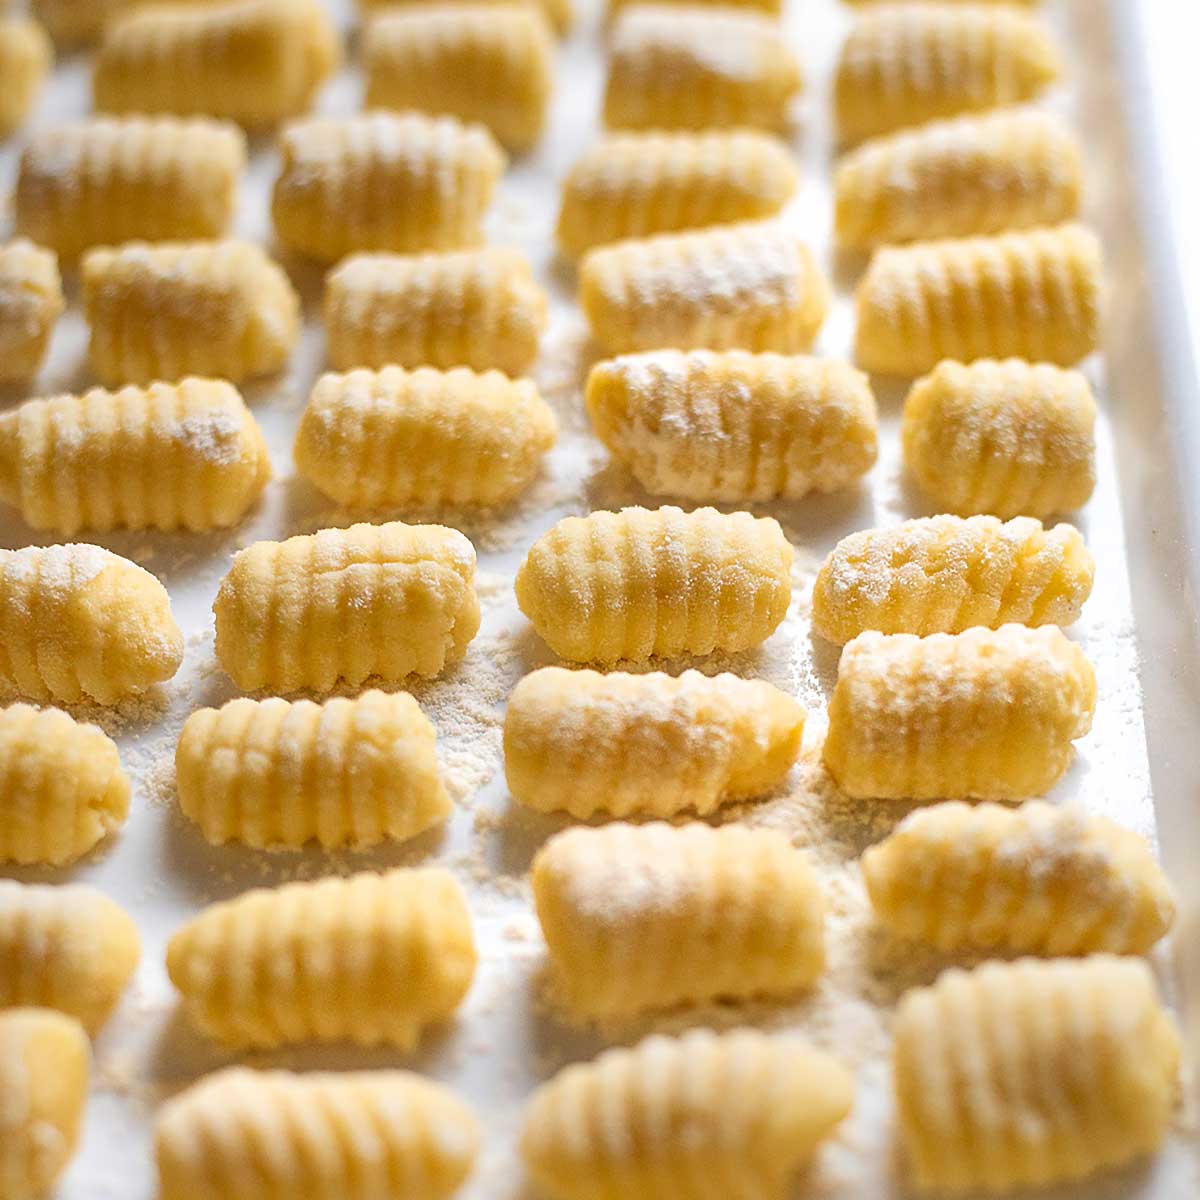 Potato gnocchi on a tray close up view.